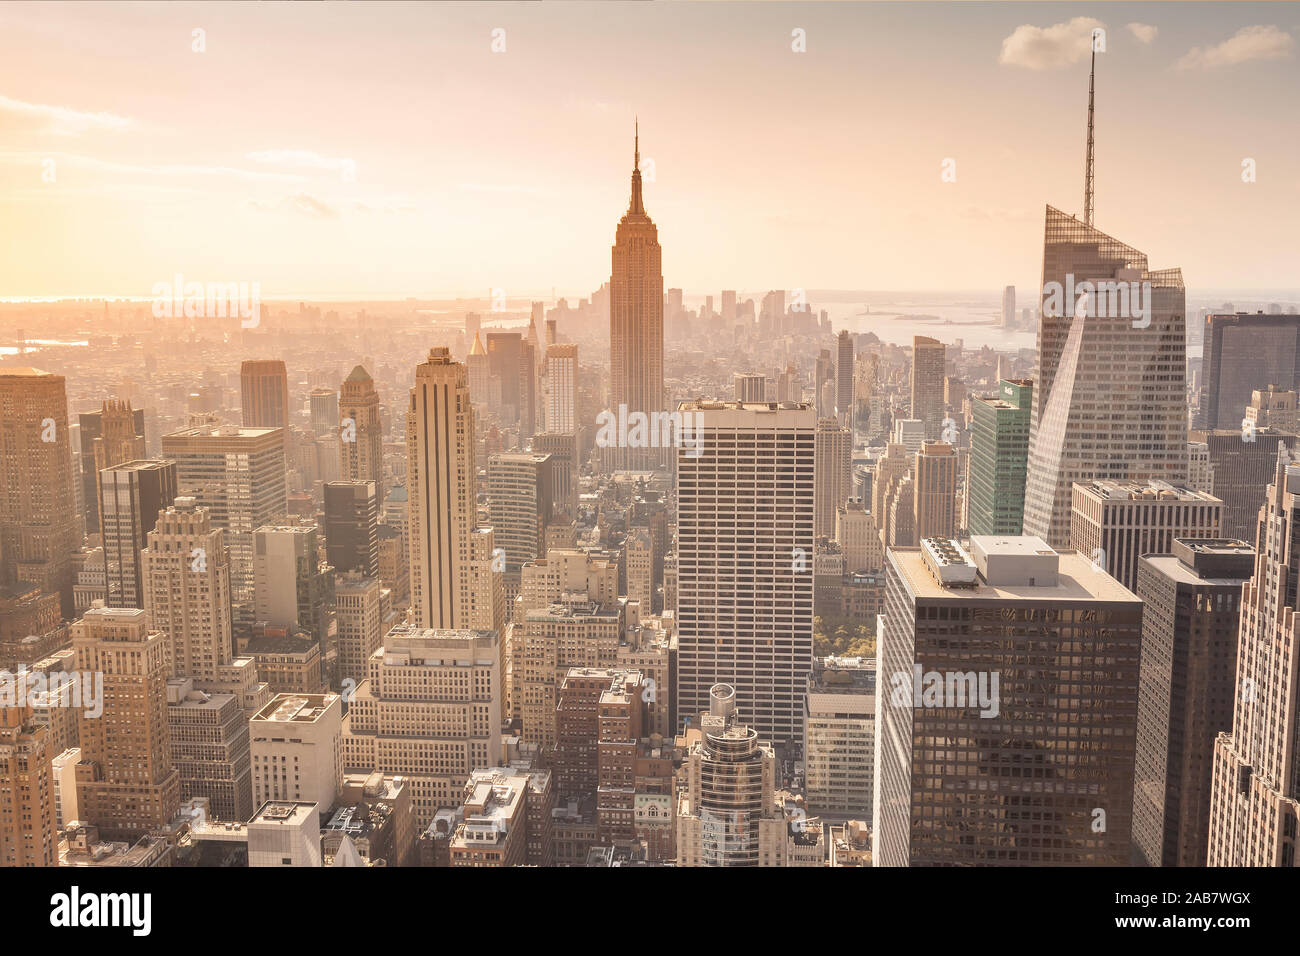 Ein Blick auf die Stadt New York in Amerika Stock Photo